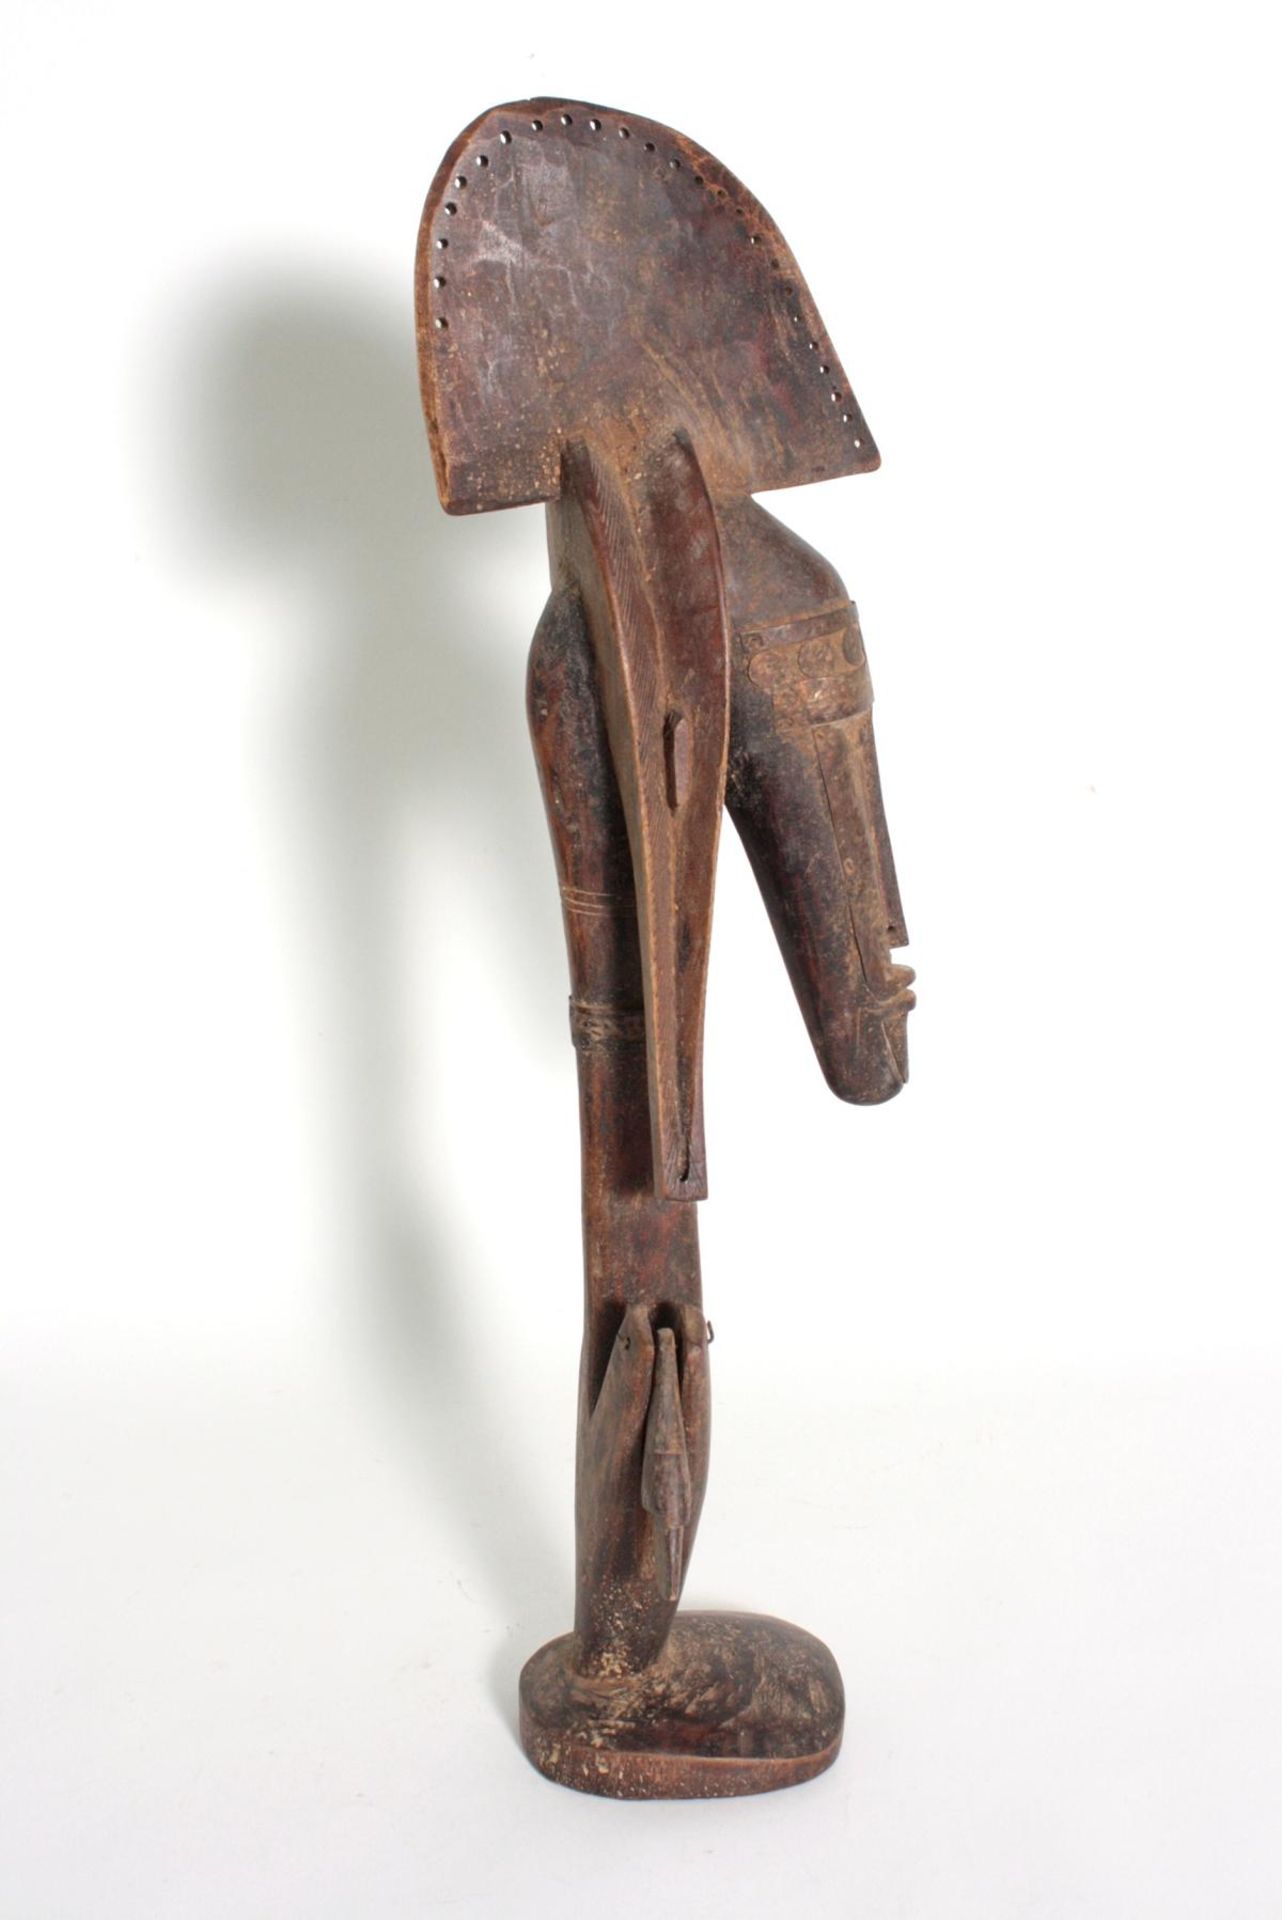 Marka-Marionette, Mali, 1. Hälfte 20. Jh.Holz, geschnitzt, im typischen Marka-Stil mit langer, - Bild 6 aus 6